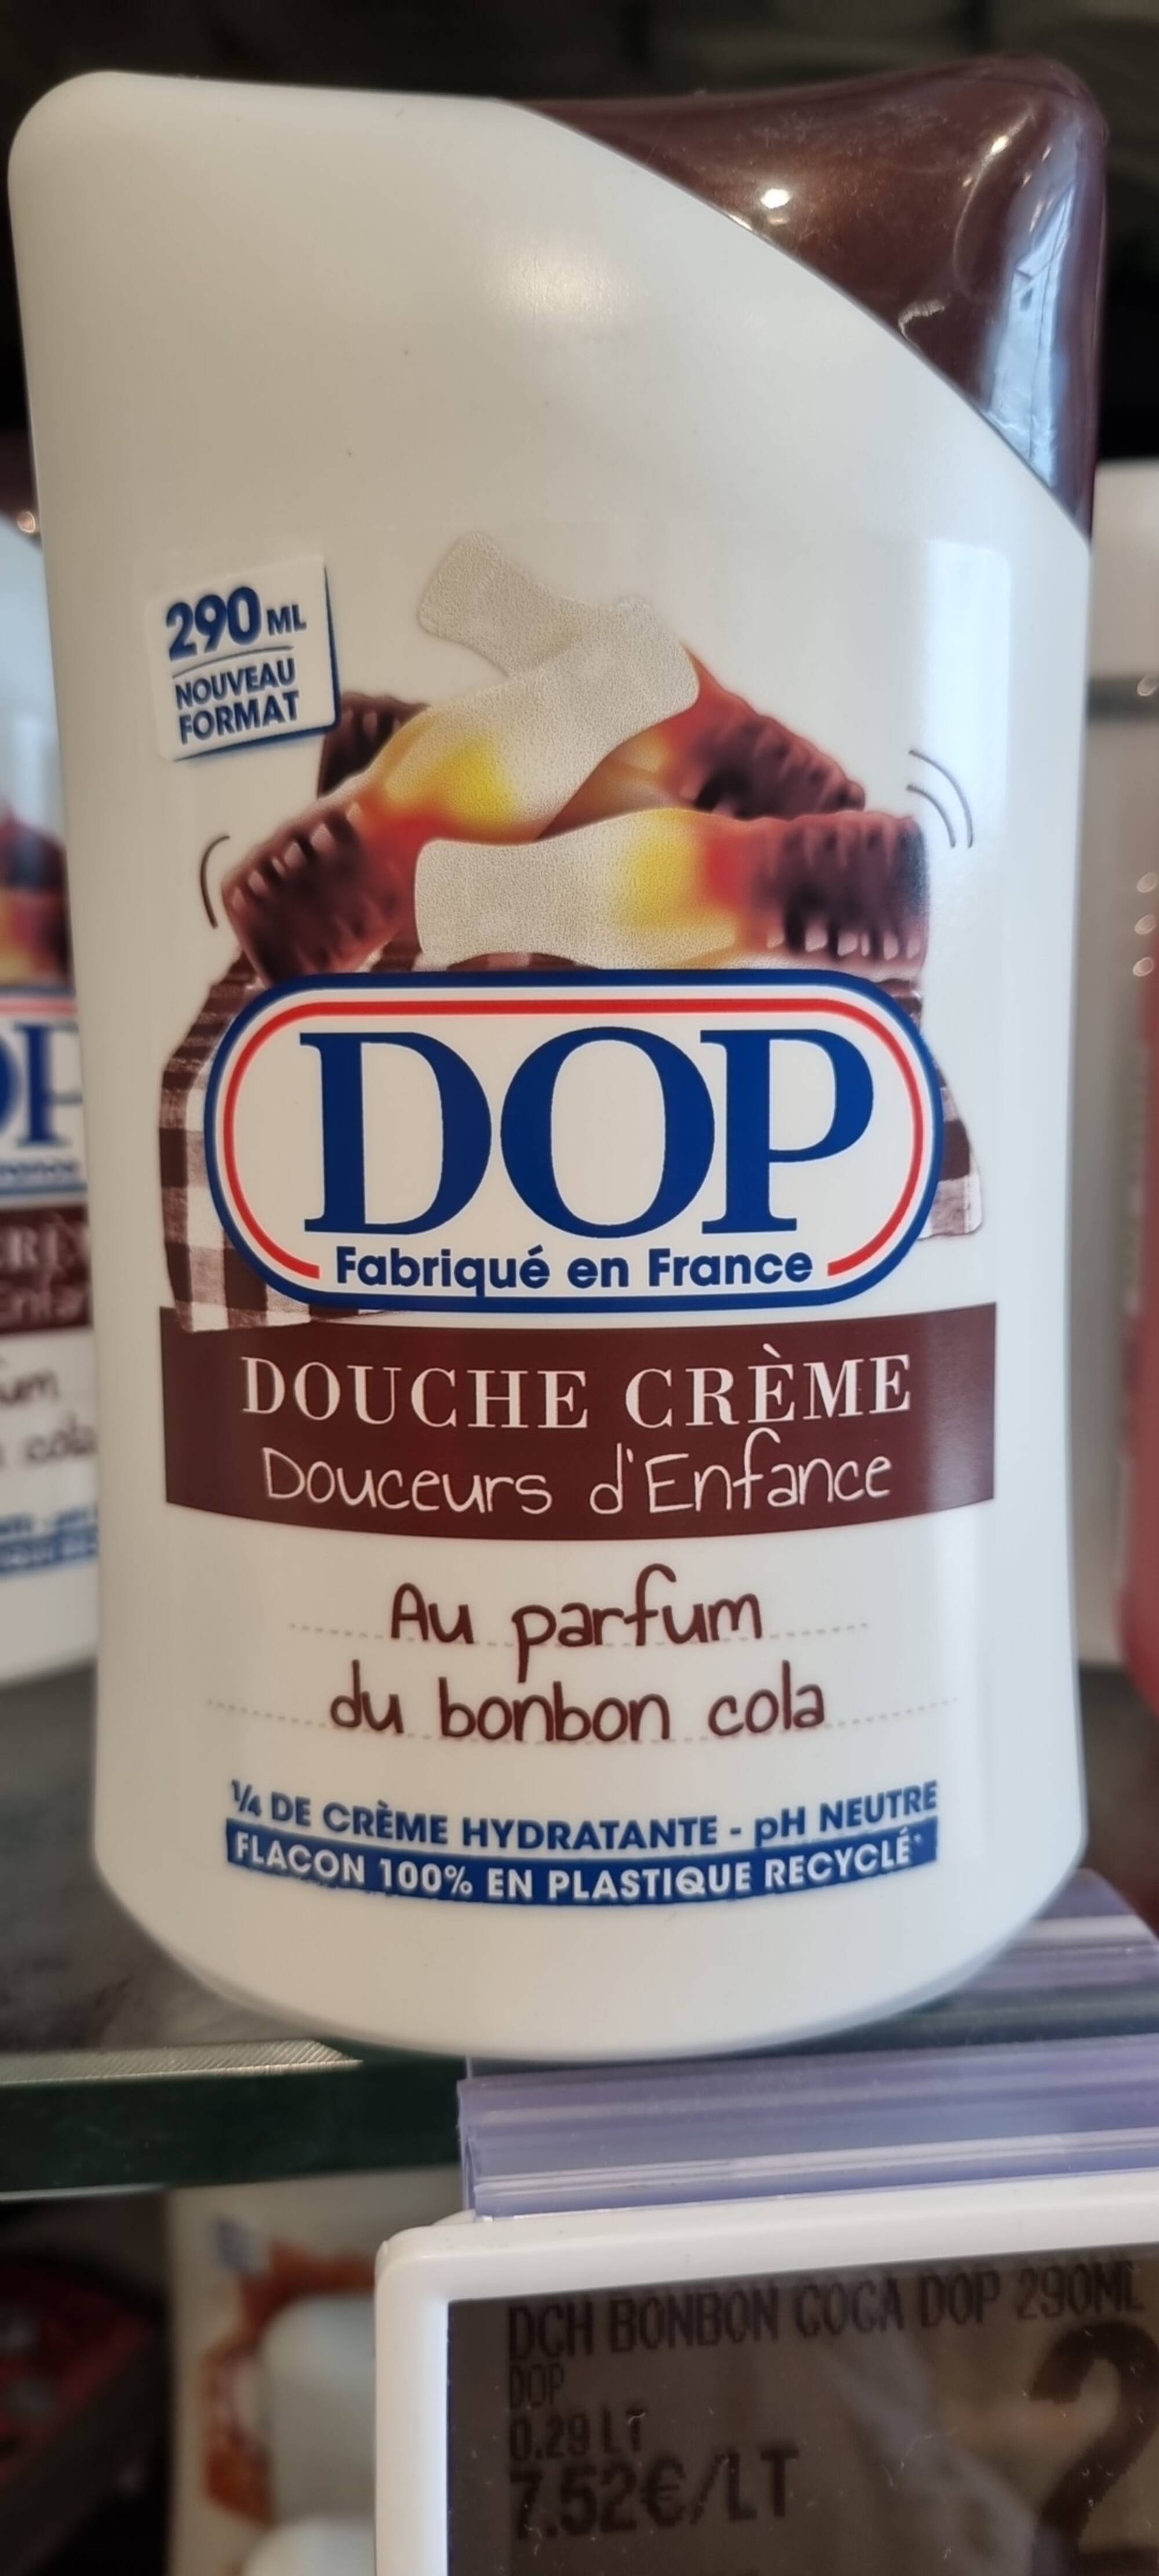 DOP - Douche crème au parfum du bonbon cola